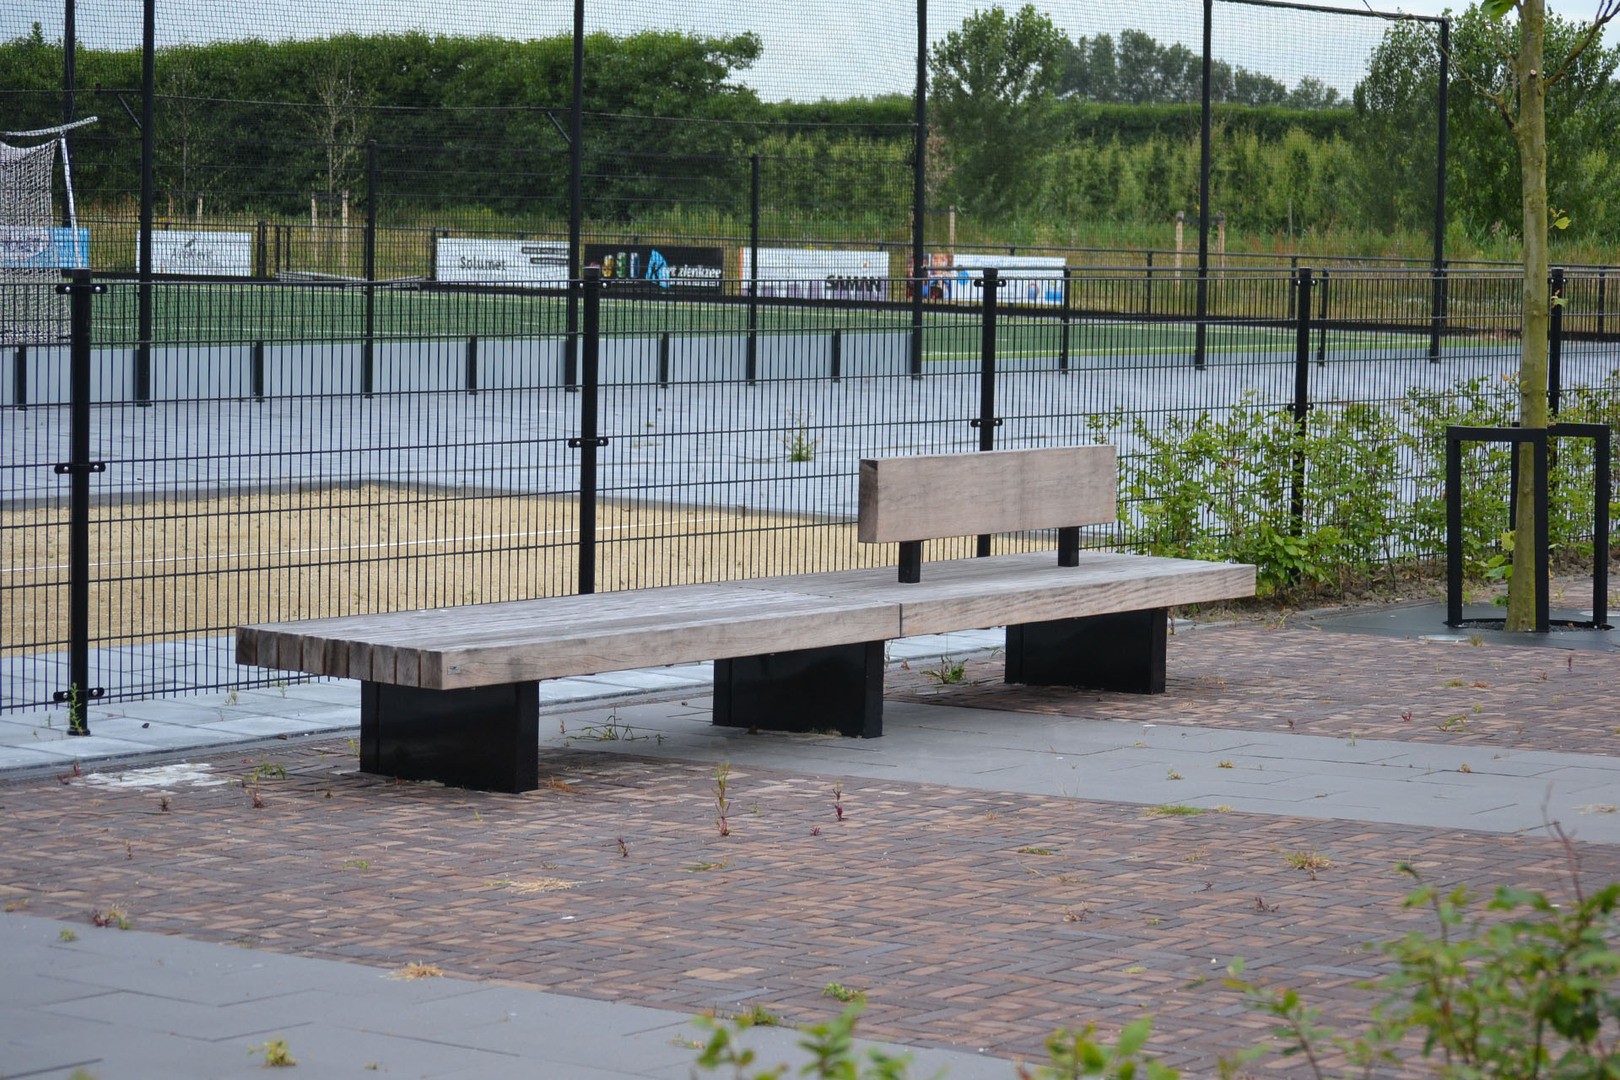 Espace public - Aménagement parc sportif par Grijsen